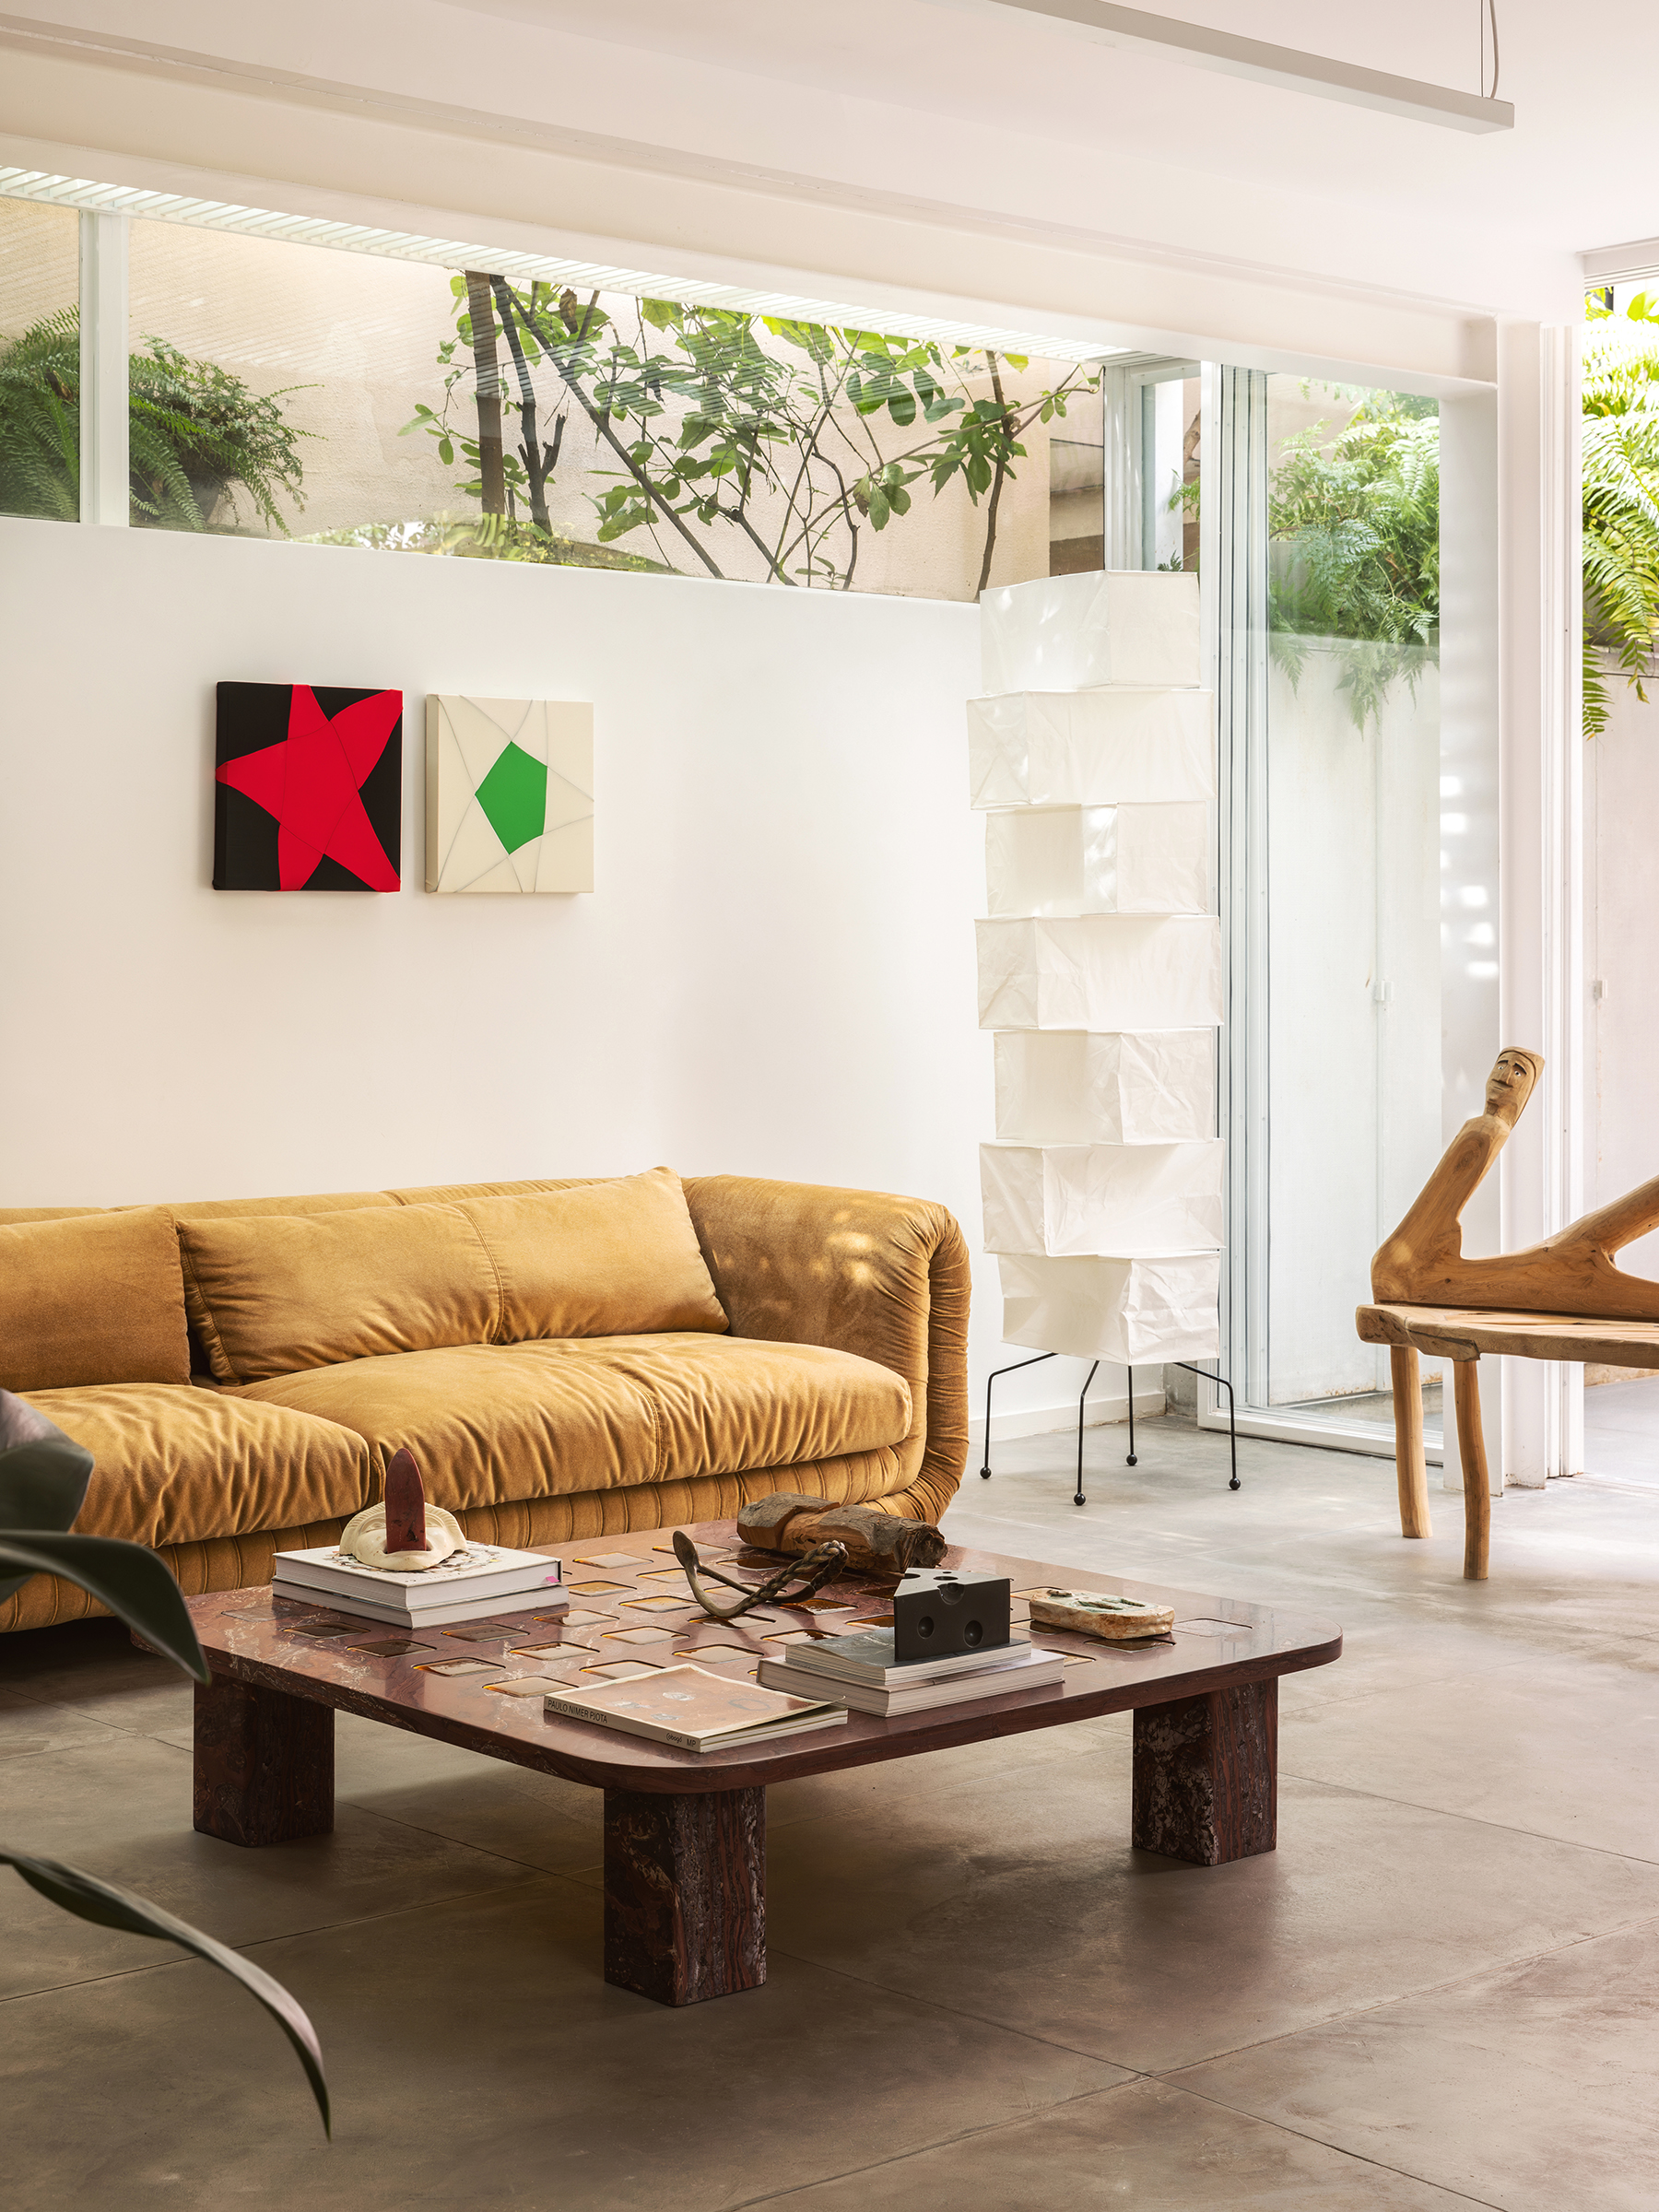 Casa com espaços integrados, muitas obras de arte e área externa cor-de-rosa.